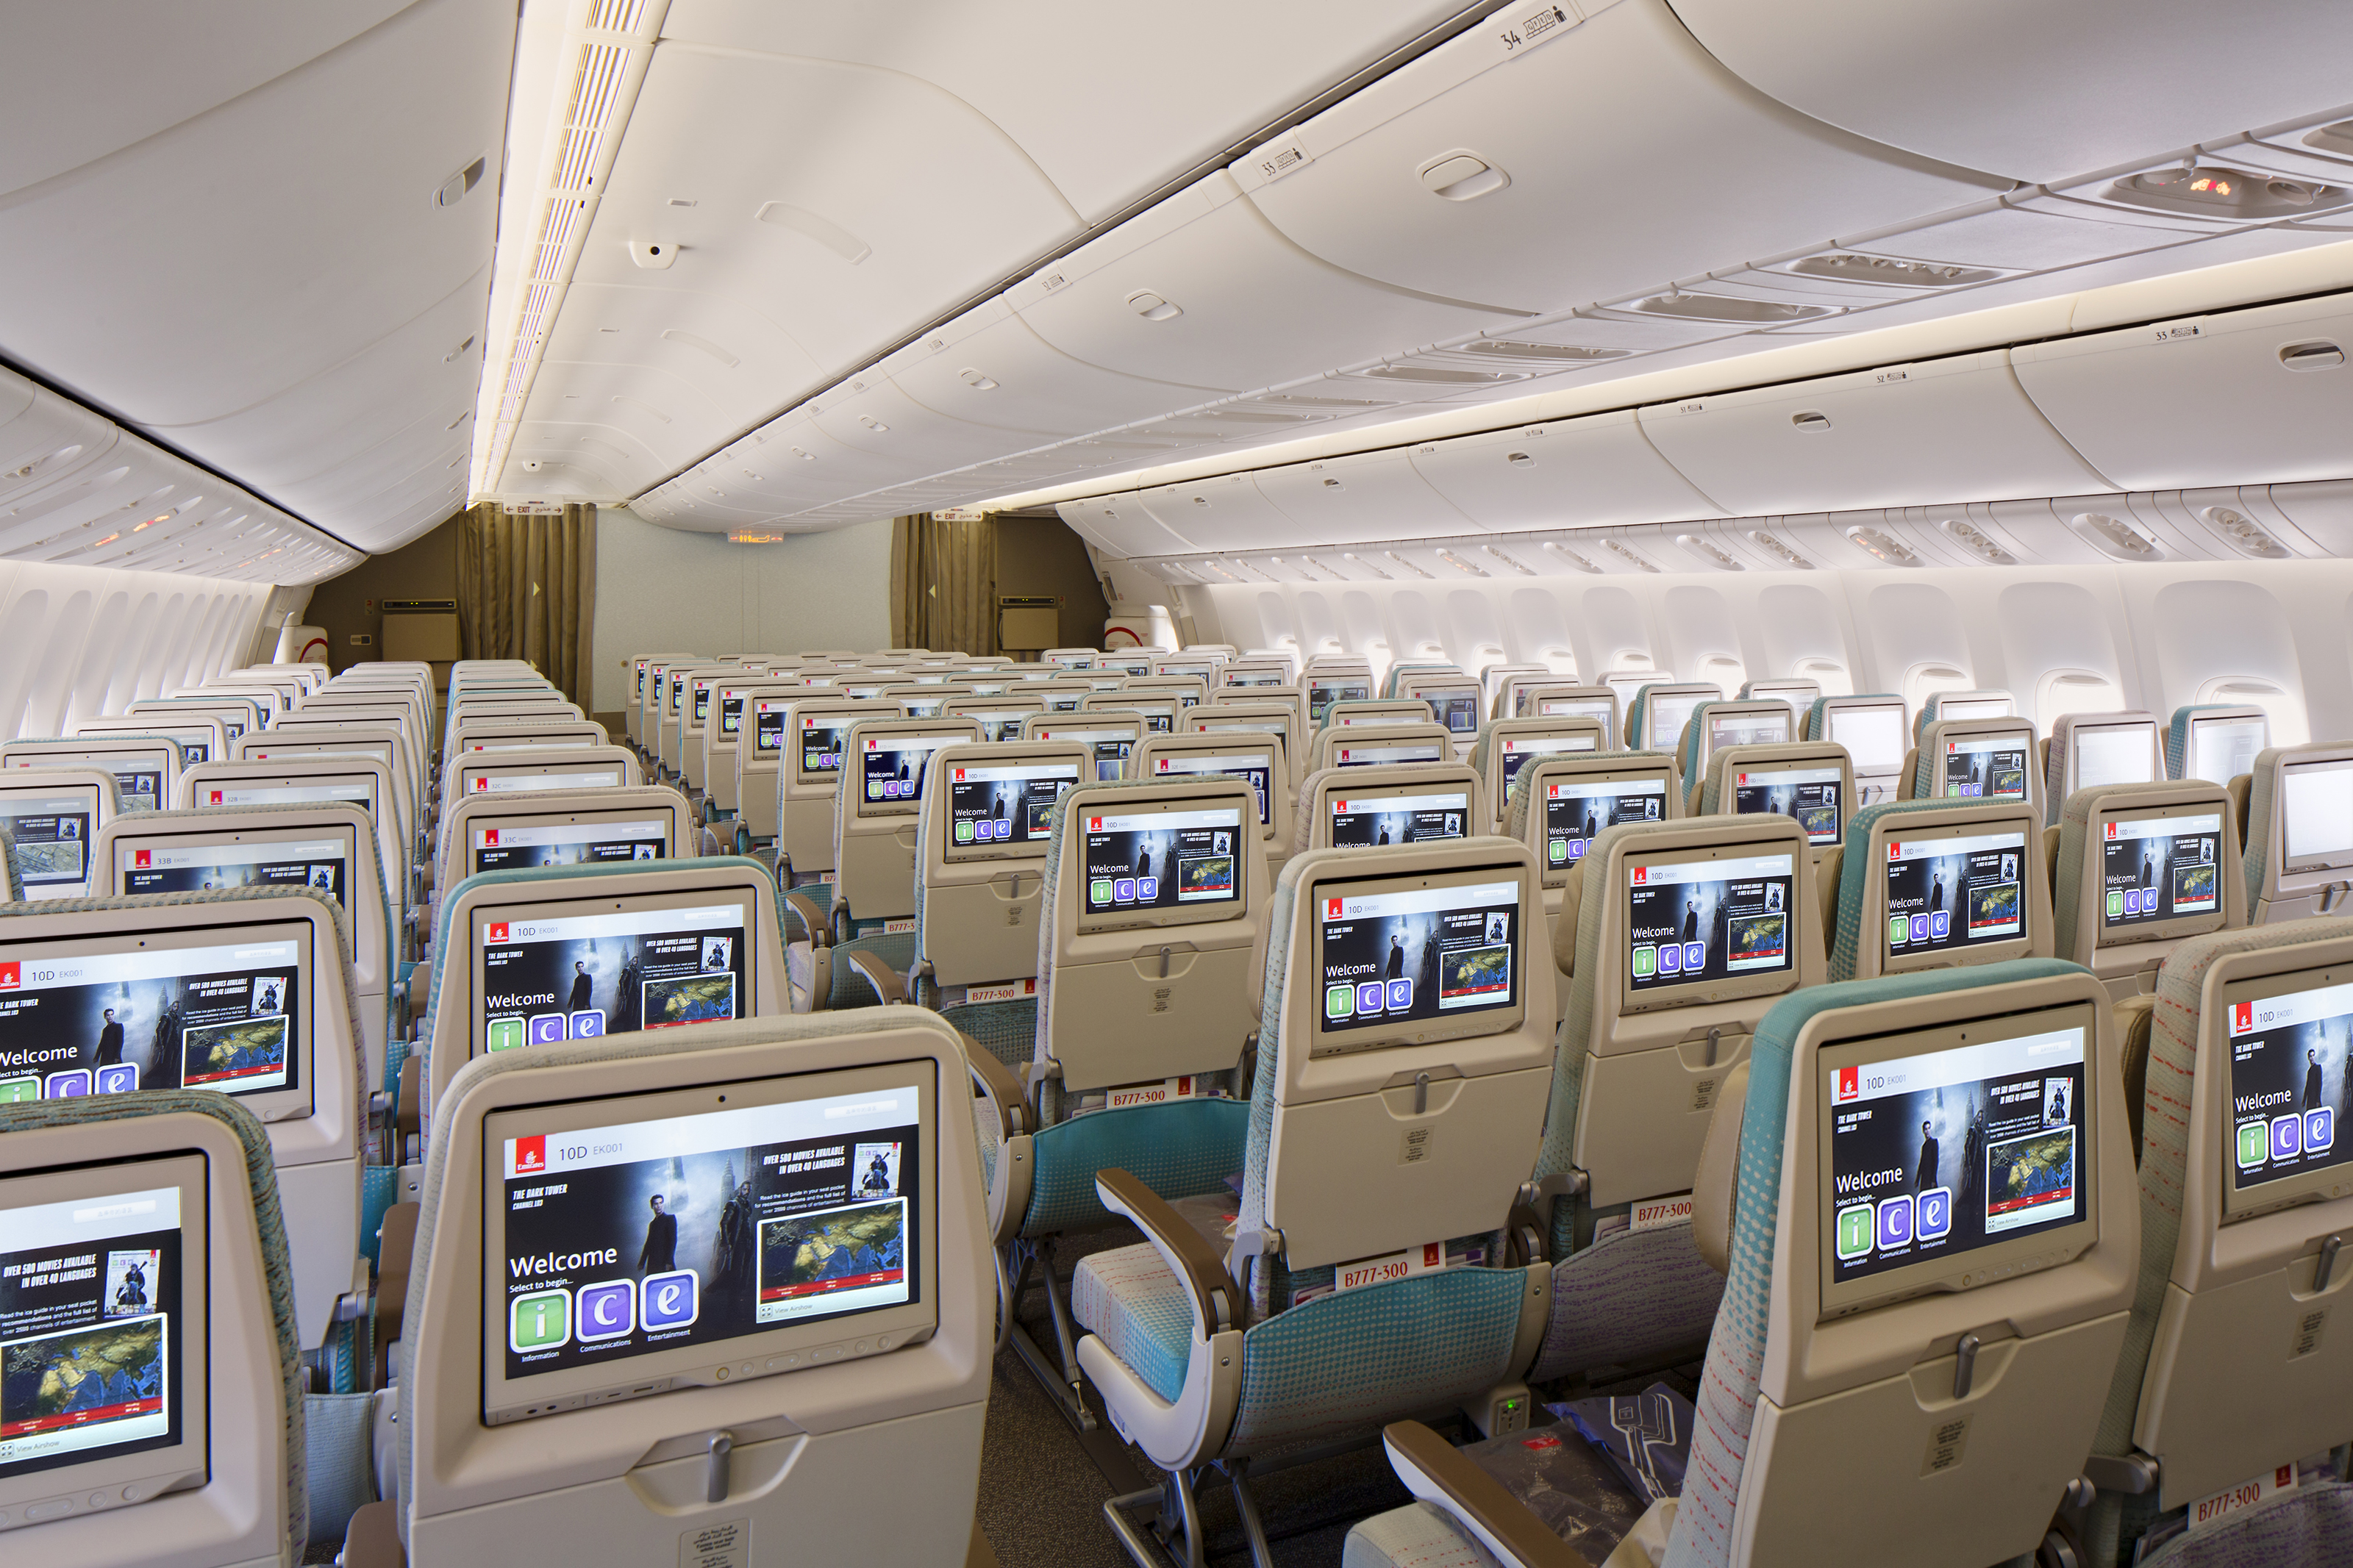 Boeing 777 emirates